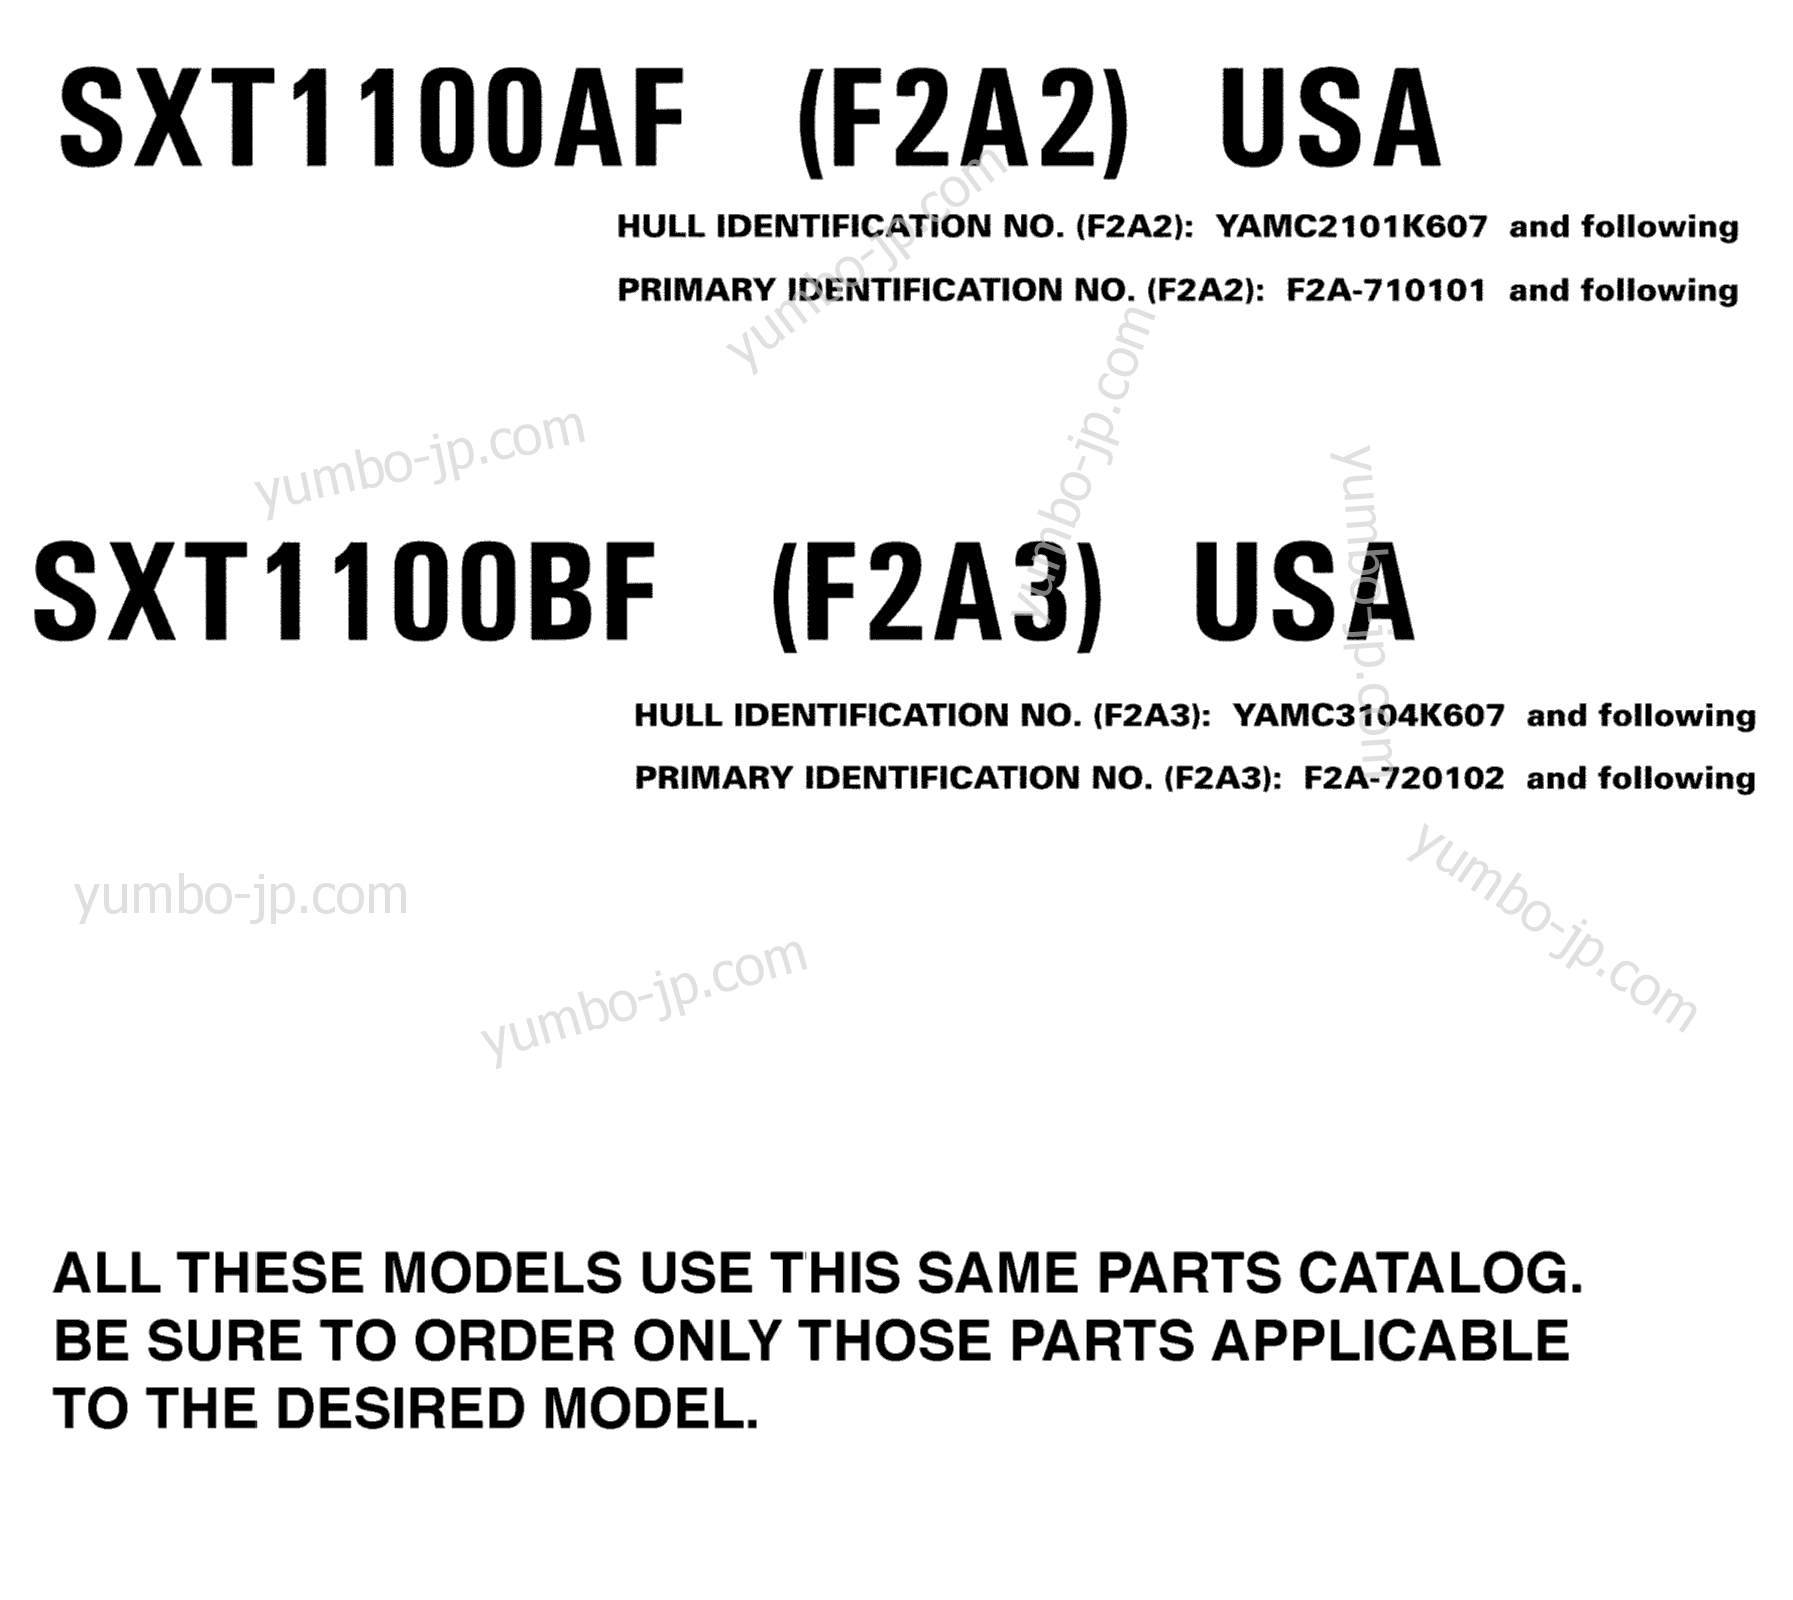 Models In This Catalog для катеров YAMAHA SX230 HO (BLUE) (SXT1100AF) 2007 г.